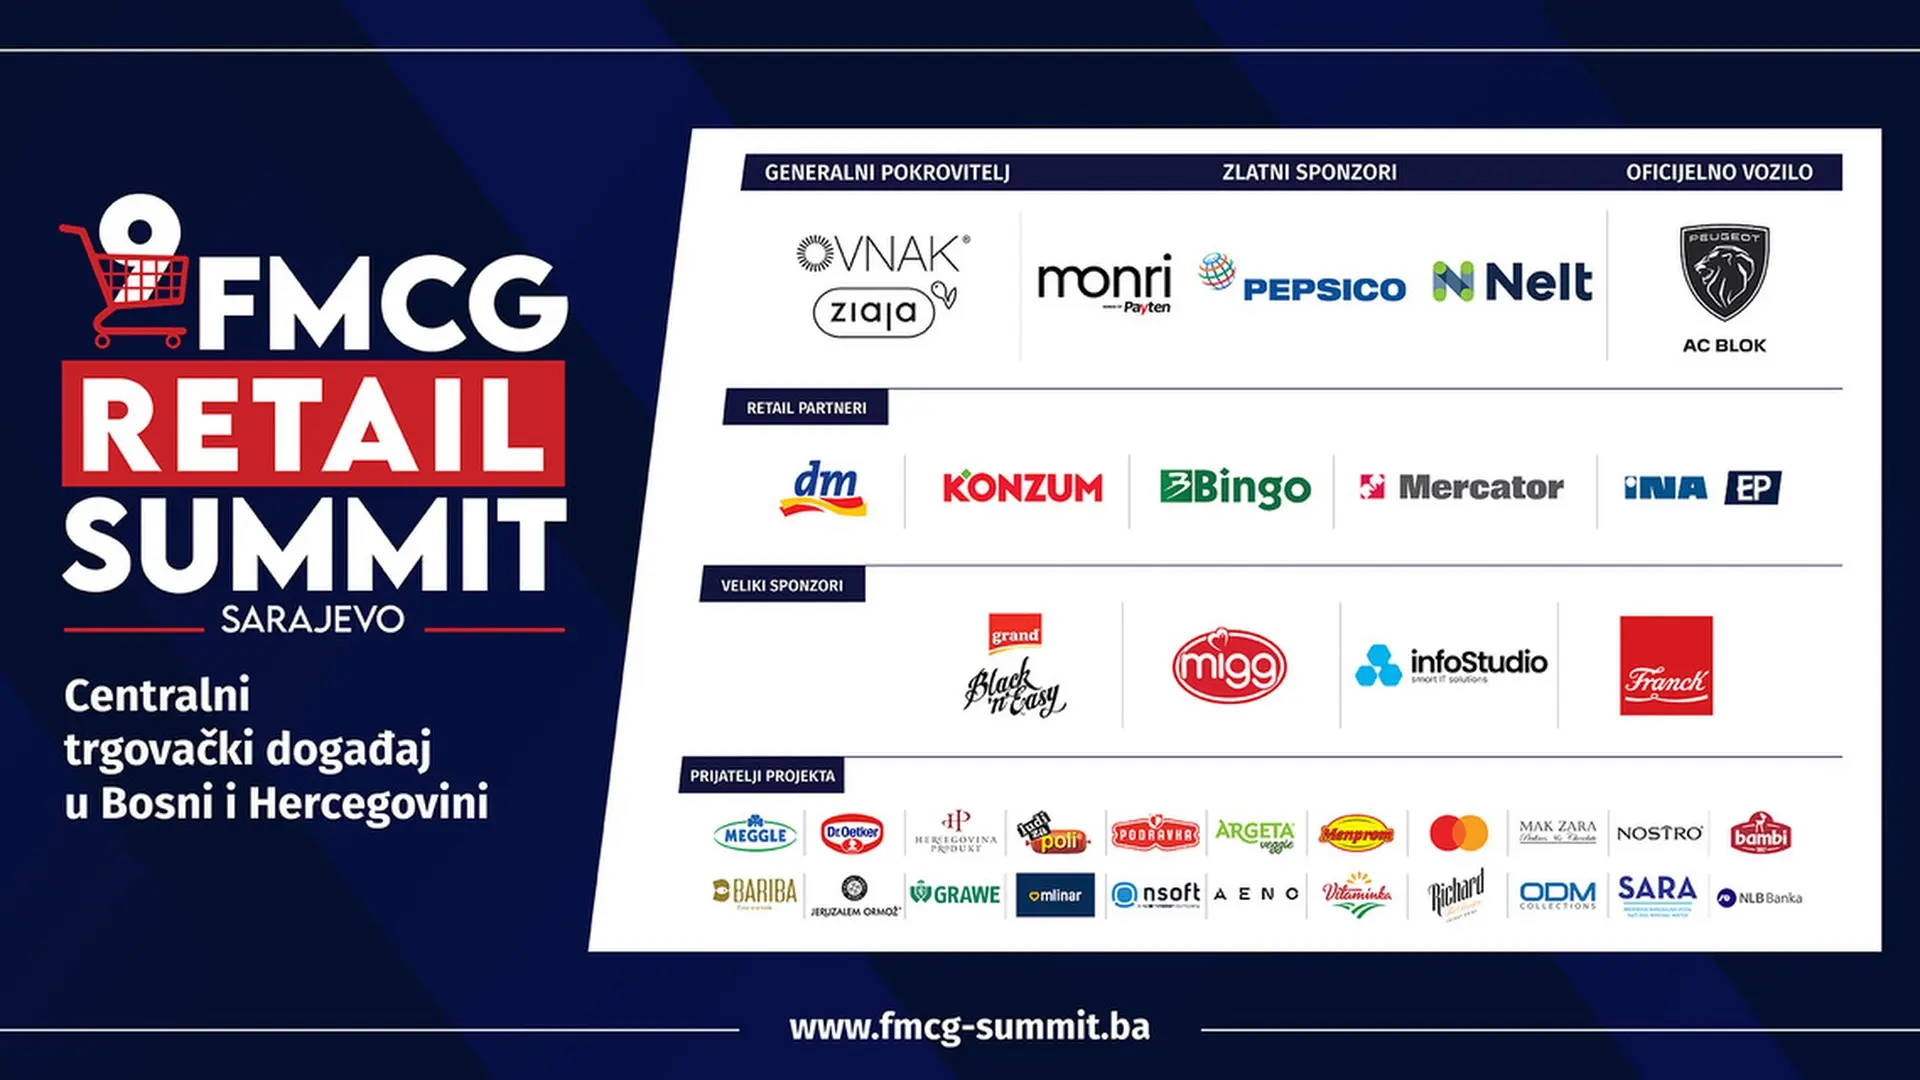 etail summit -  fmcg retail summit-640f2ca9b8f55.webp